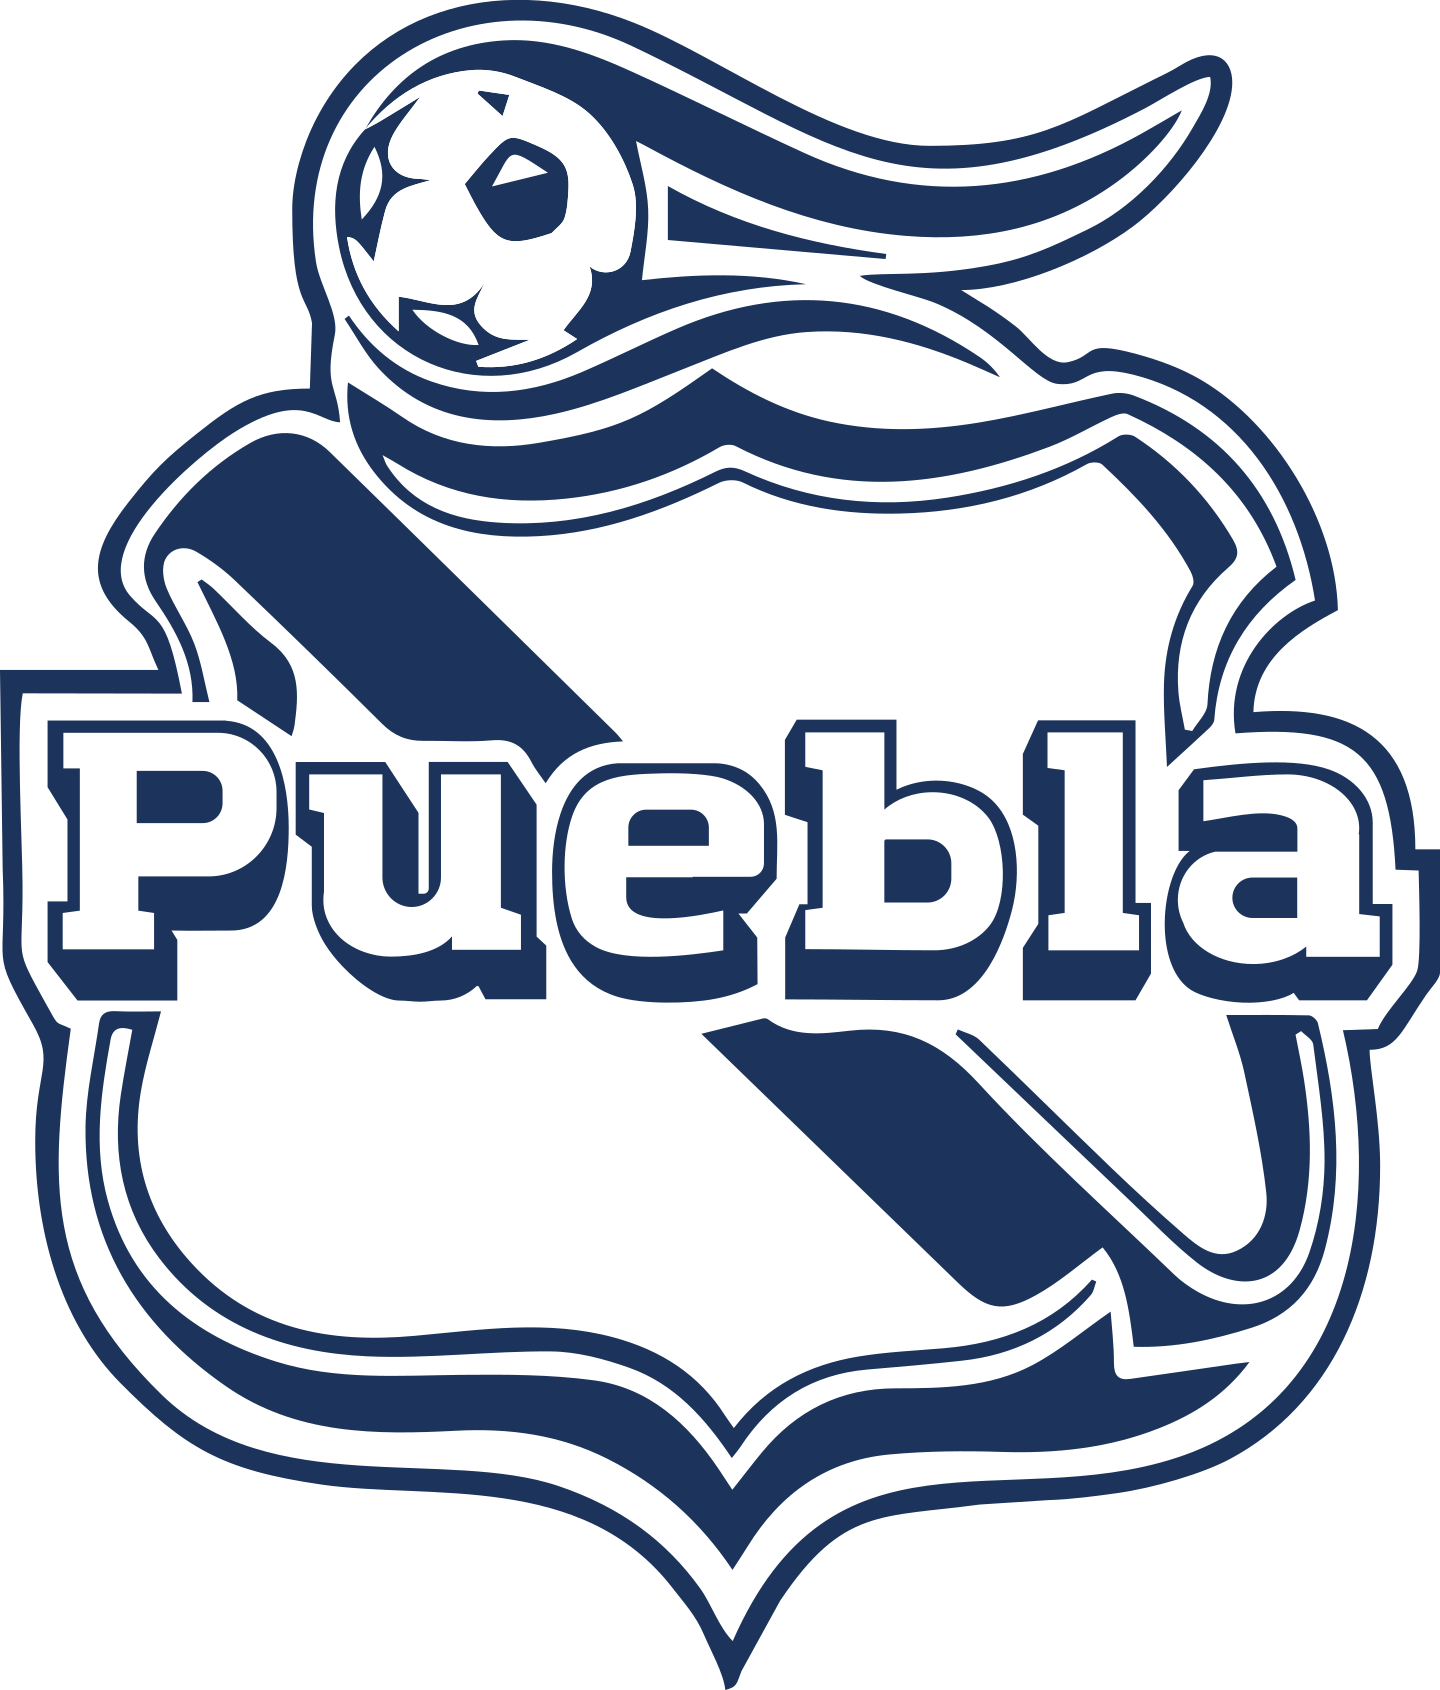 club puebla logo 2 - Club Puebla Logo